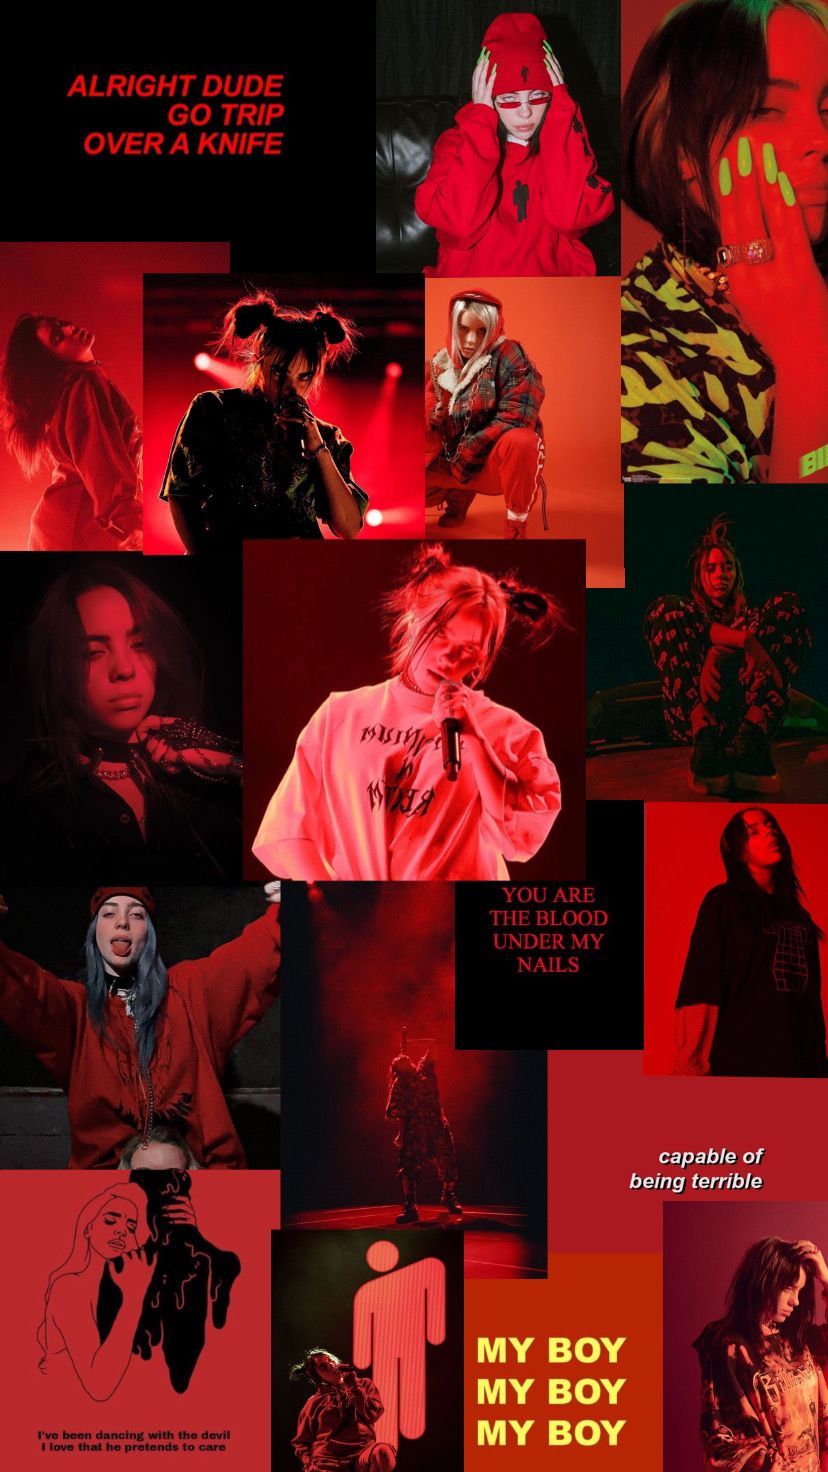 Aesthetic Red Billie Eilish Wallpaper. Billie, Billie eilish, Aesthetic collage